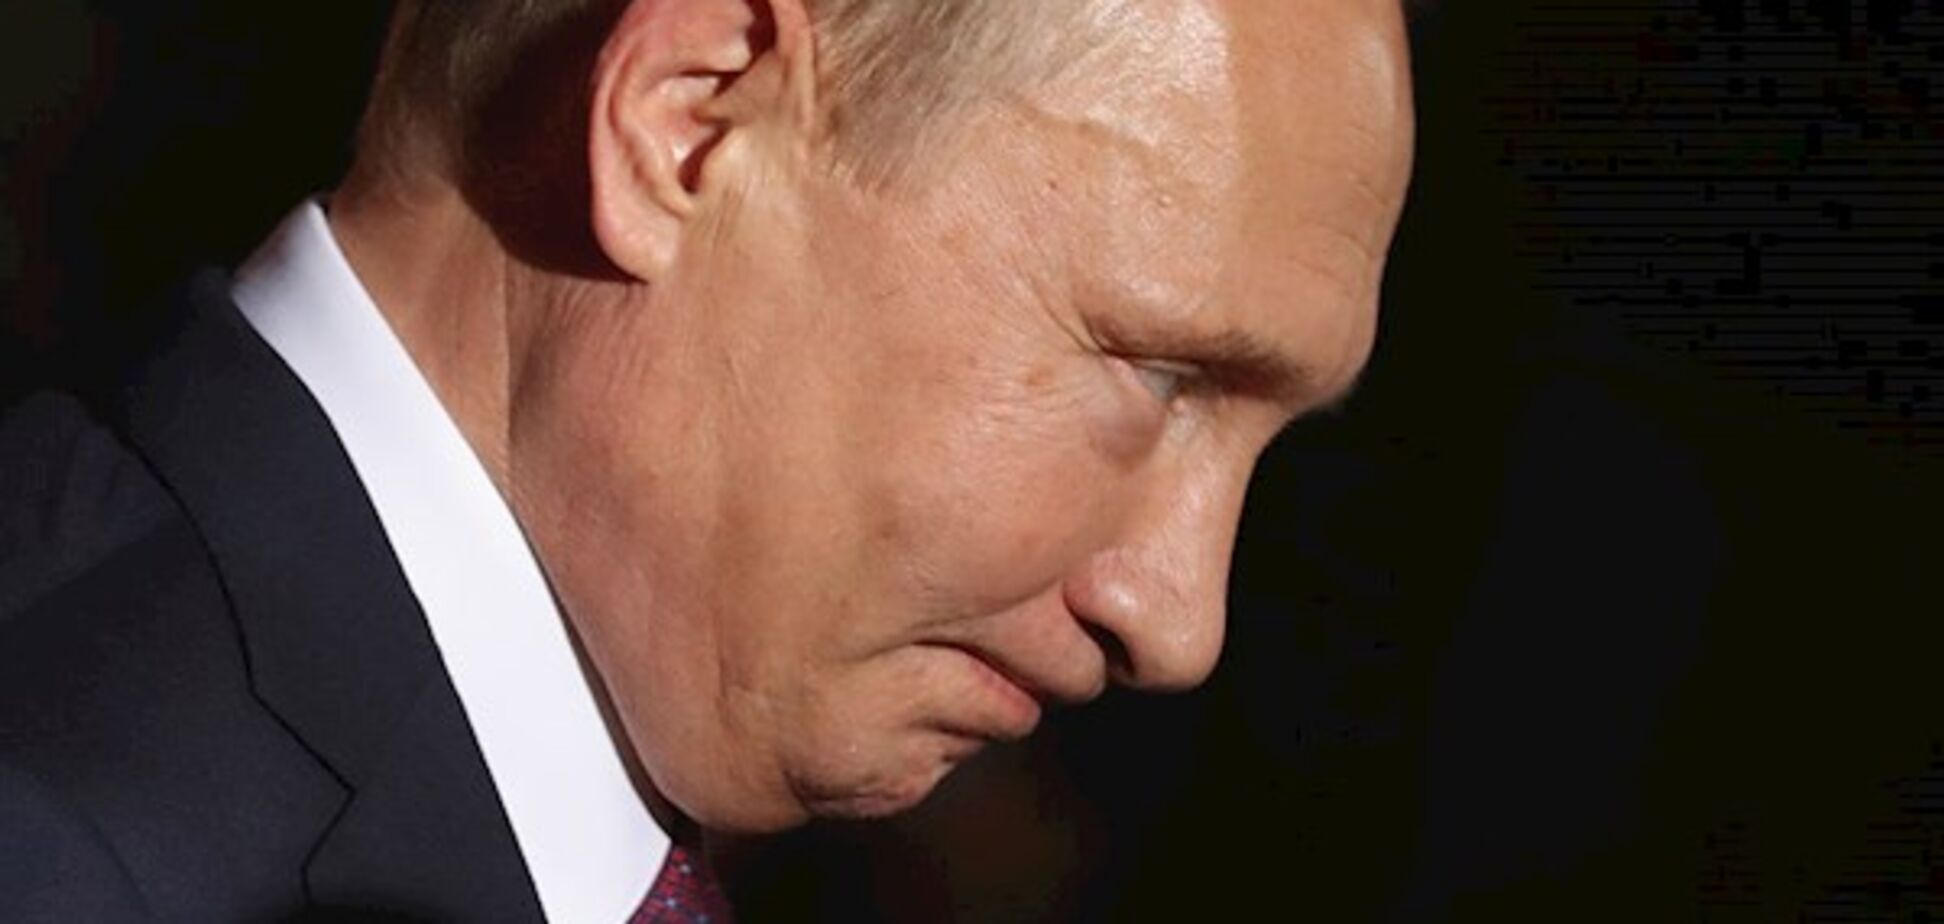 ЕС введет персональные санкции за выборы Путина в Крыму